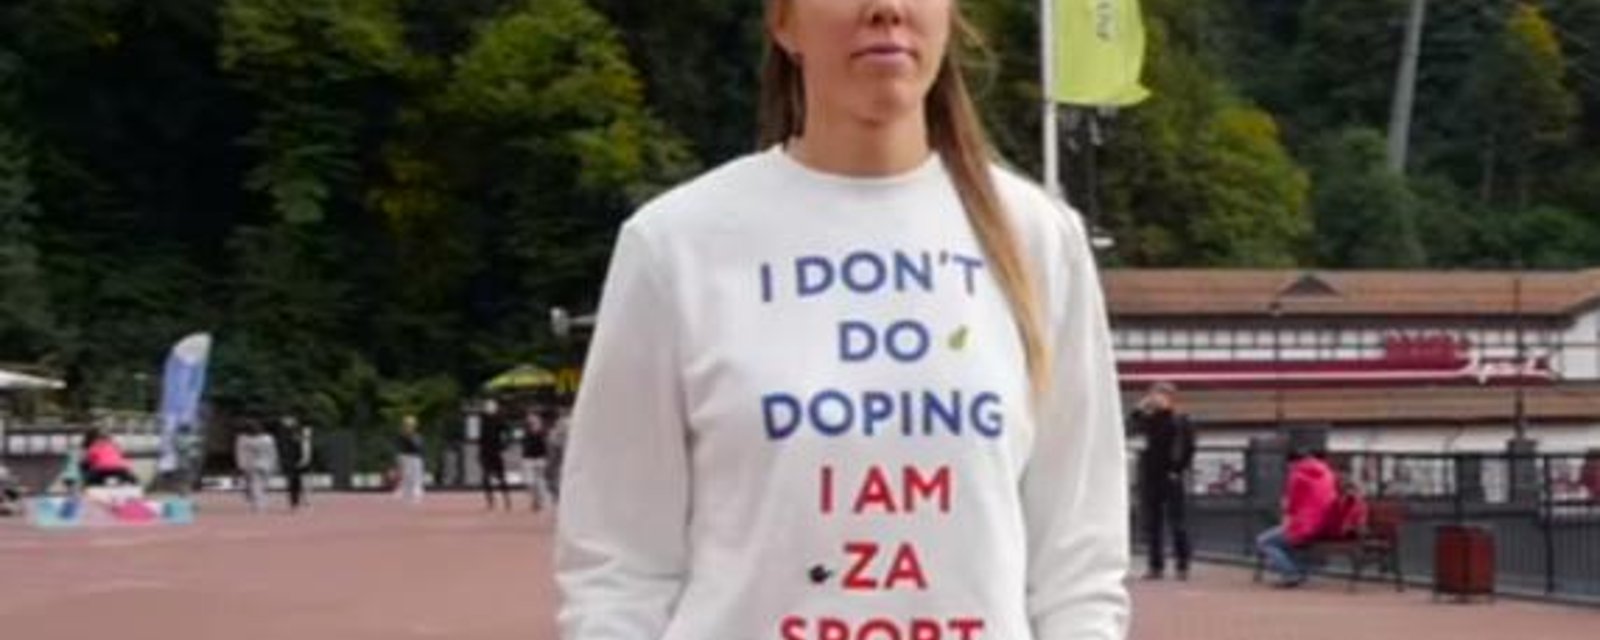 L'athlète russe qui portait un chandail «I don't do doping» s'est fait prendre pour dopage